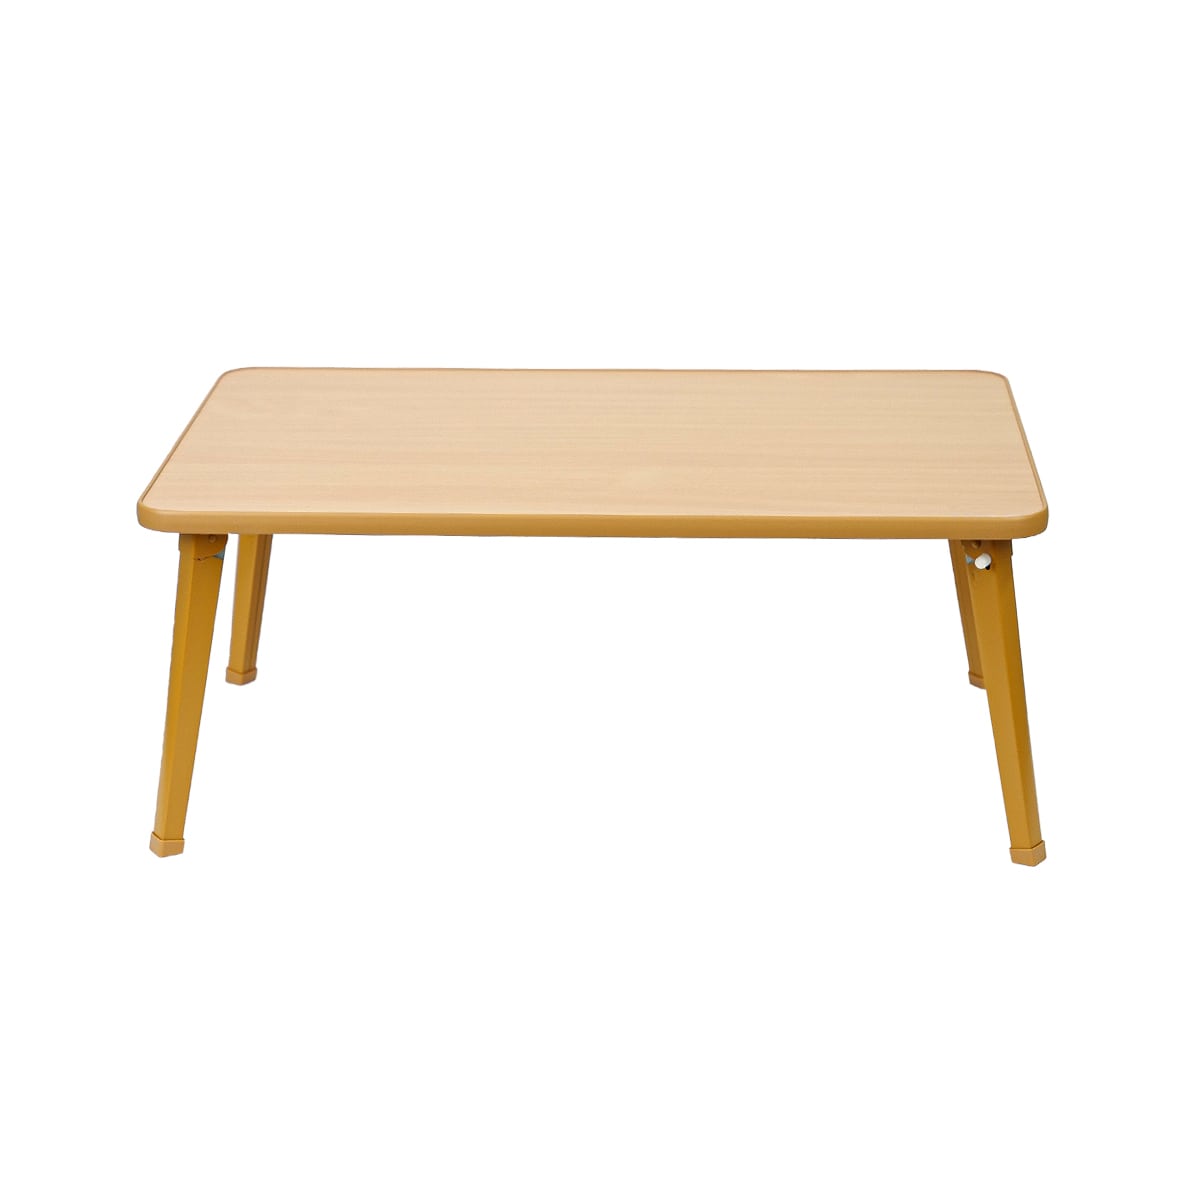 日本製 折りたたみテーブル 【幅63.5cm ダークブラウン×シルバー】